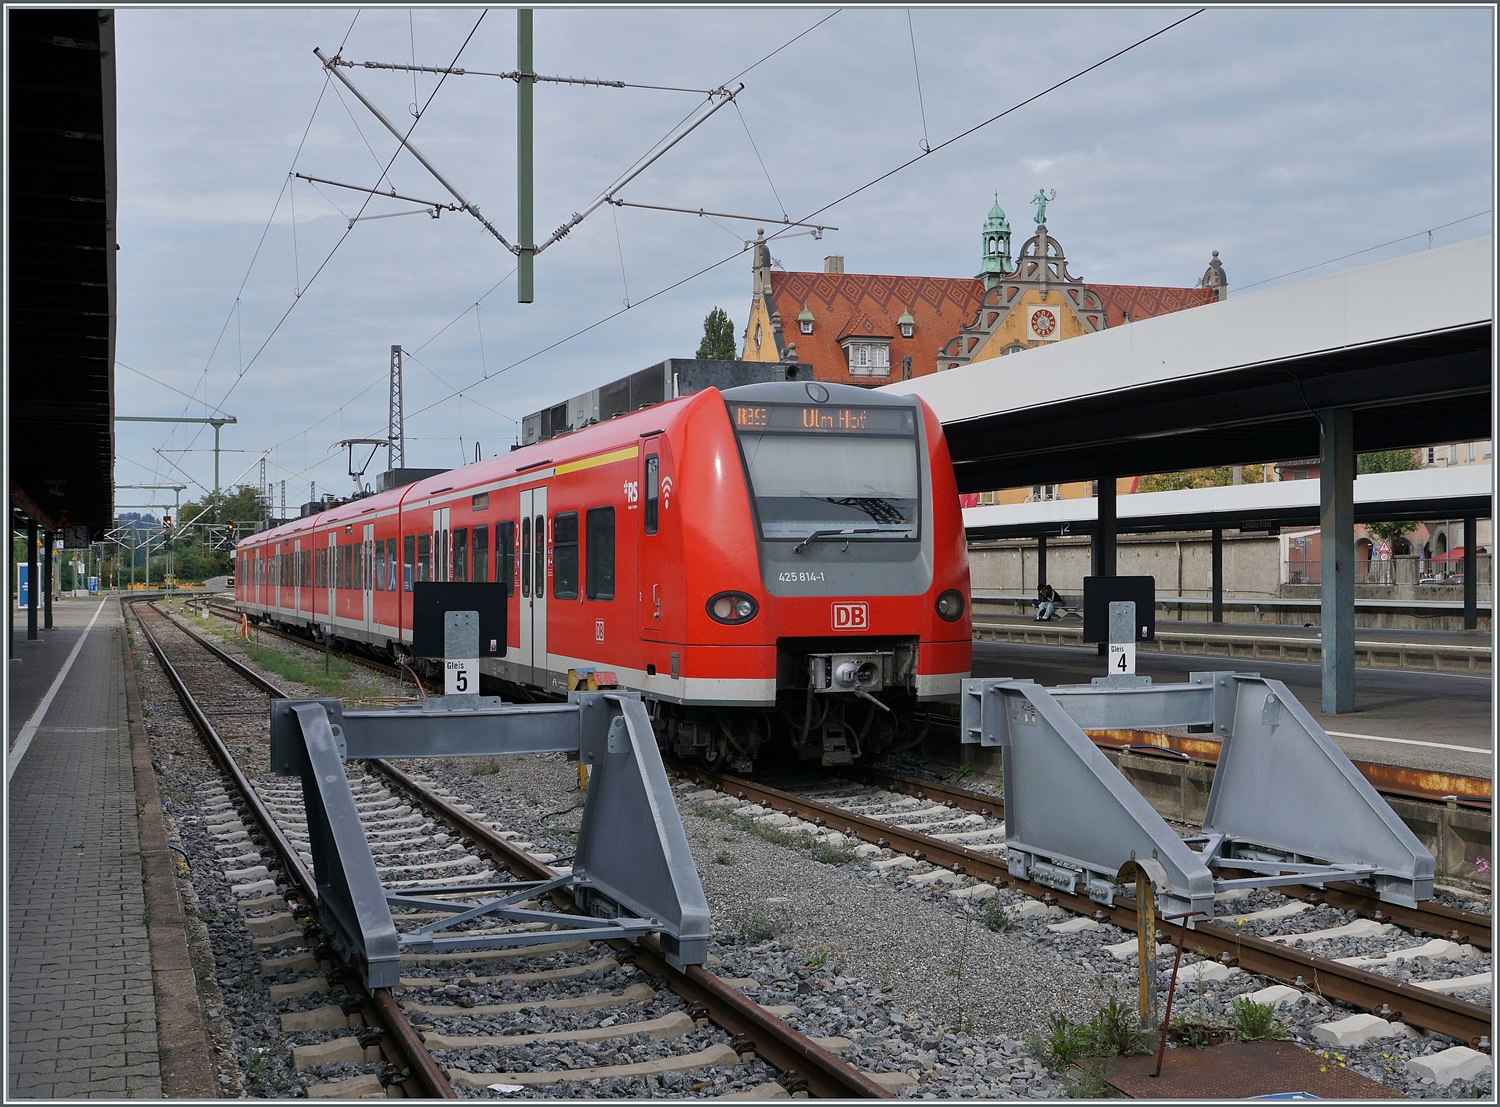 Nach all den vielen Jahren in denen ich in Lindau HBF Dieselloks fotografierte, ist es doch ungewohnt nun im  Lindau Insel  genannten Bahnhof plötzlich DB 425 anzutreffen...
Der DB 425 841-1 wartet auf die Abfahrt nach Ulm. 

13.Sept. 2022